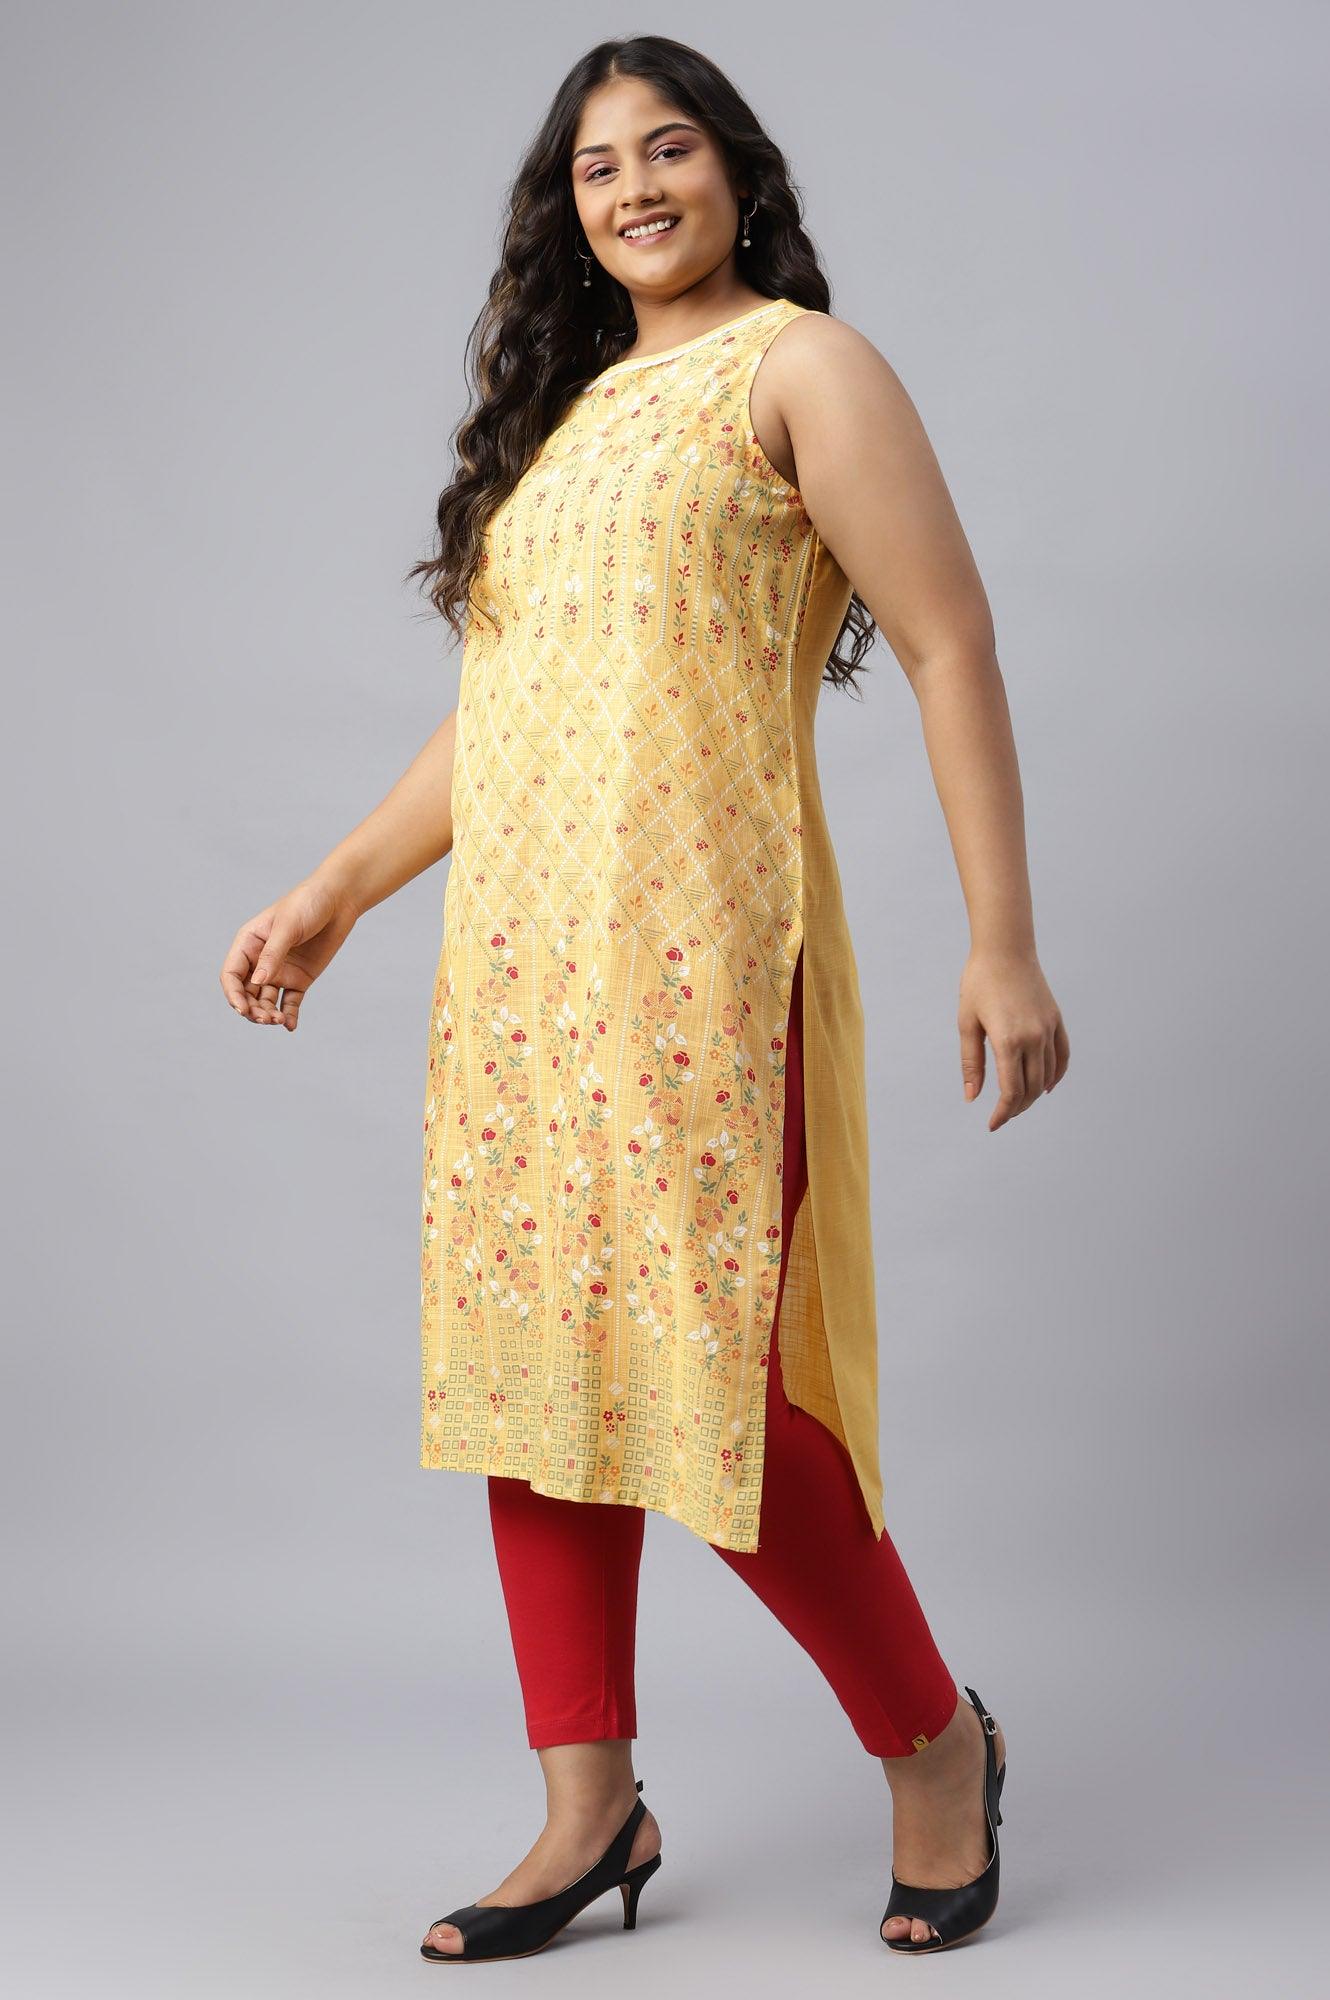 Yellow Cotton Sleeveless Plus Size kurta - wforwoman